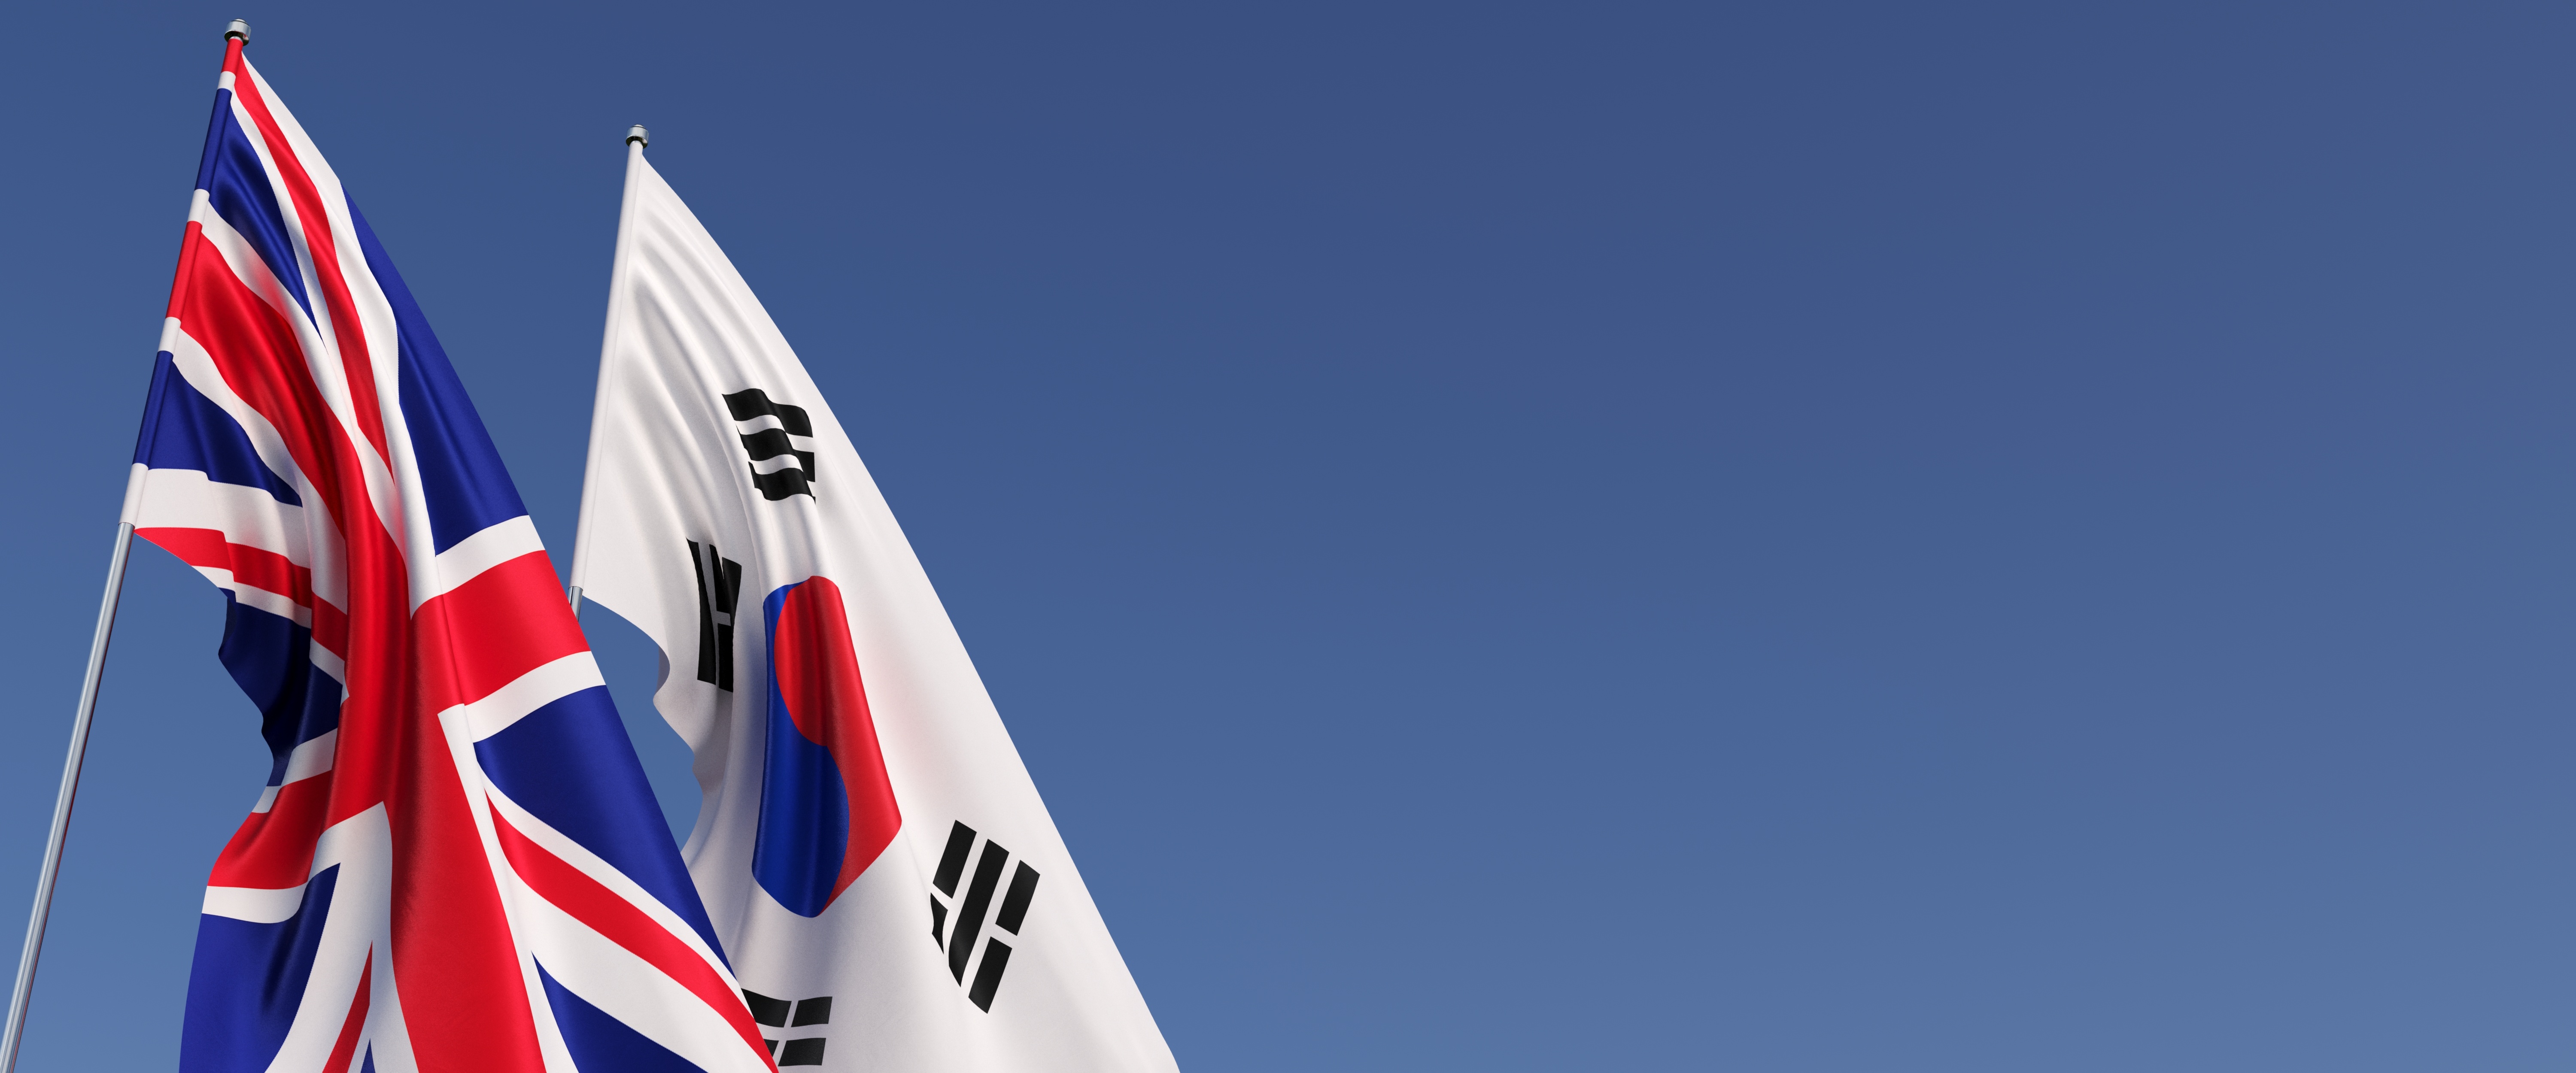 UK South Korea flags